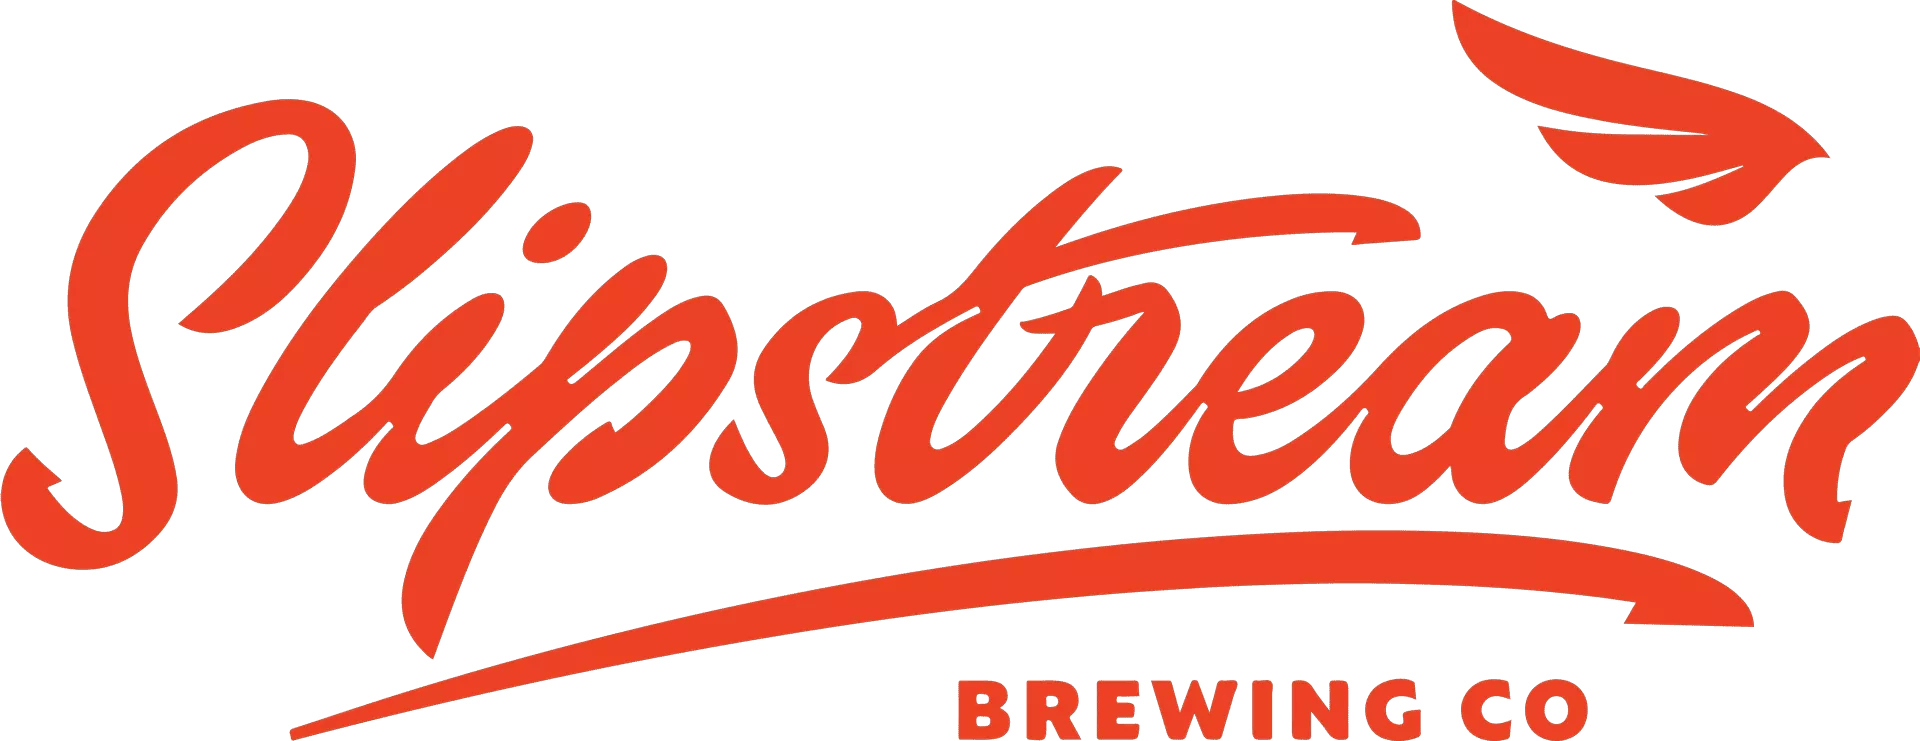 滑流啤酒厂徽标